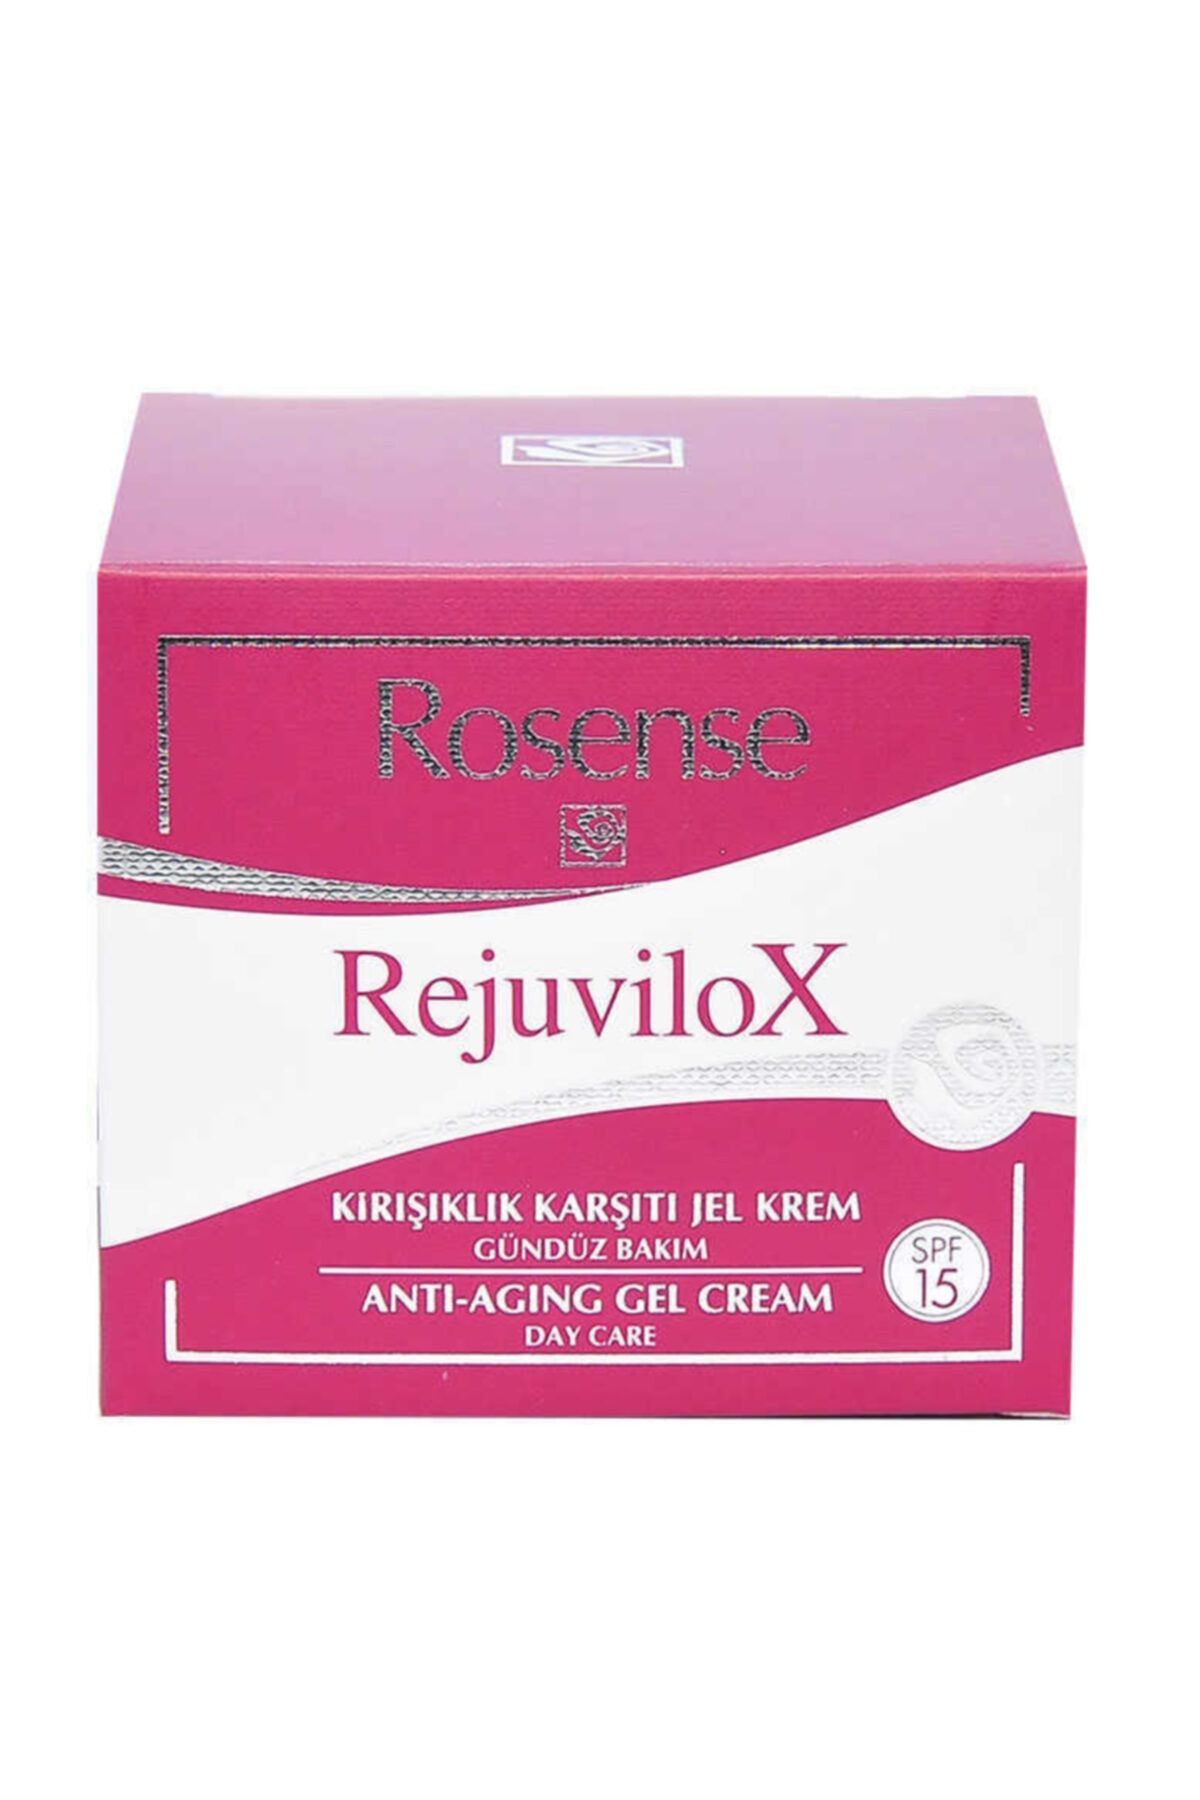 Rosense Rejuvilox Anti Aging Gündüz Bakım Kremi 50ml